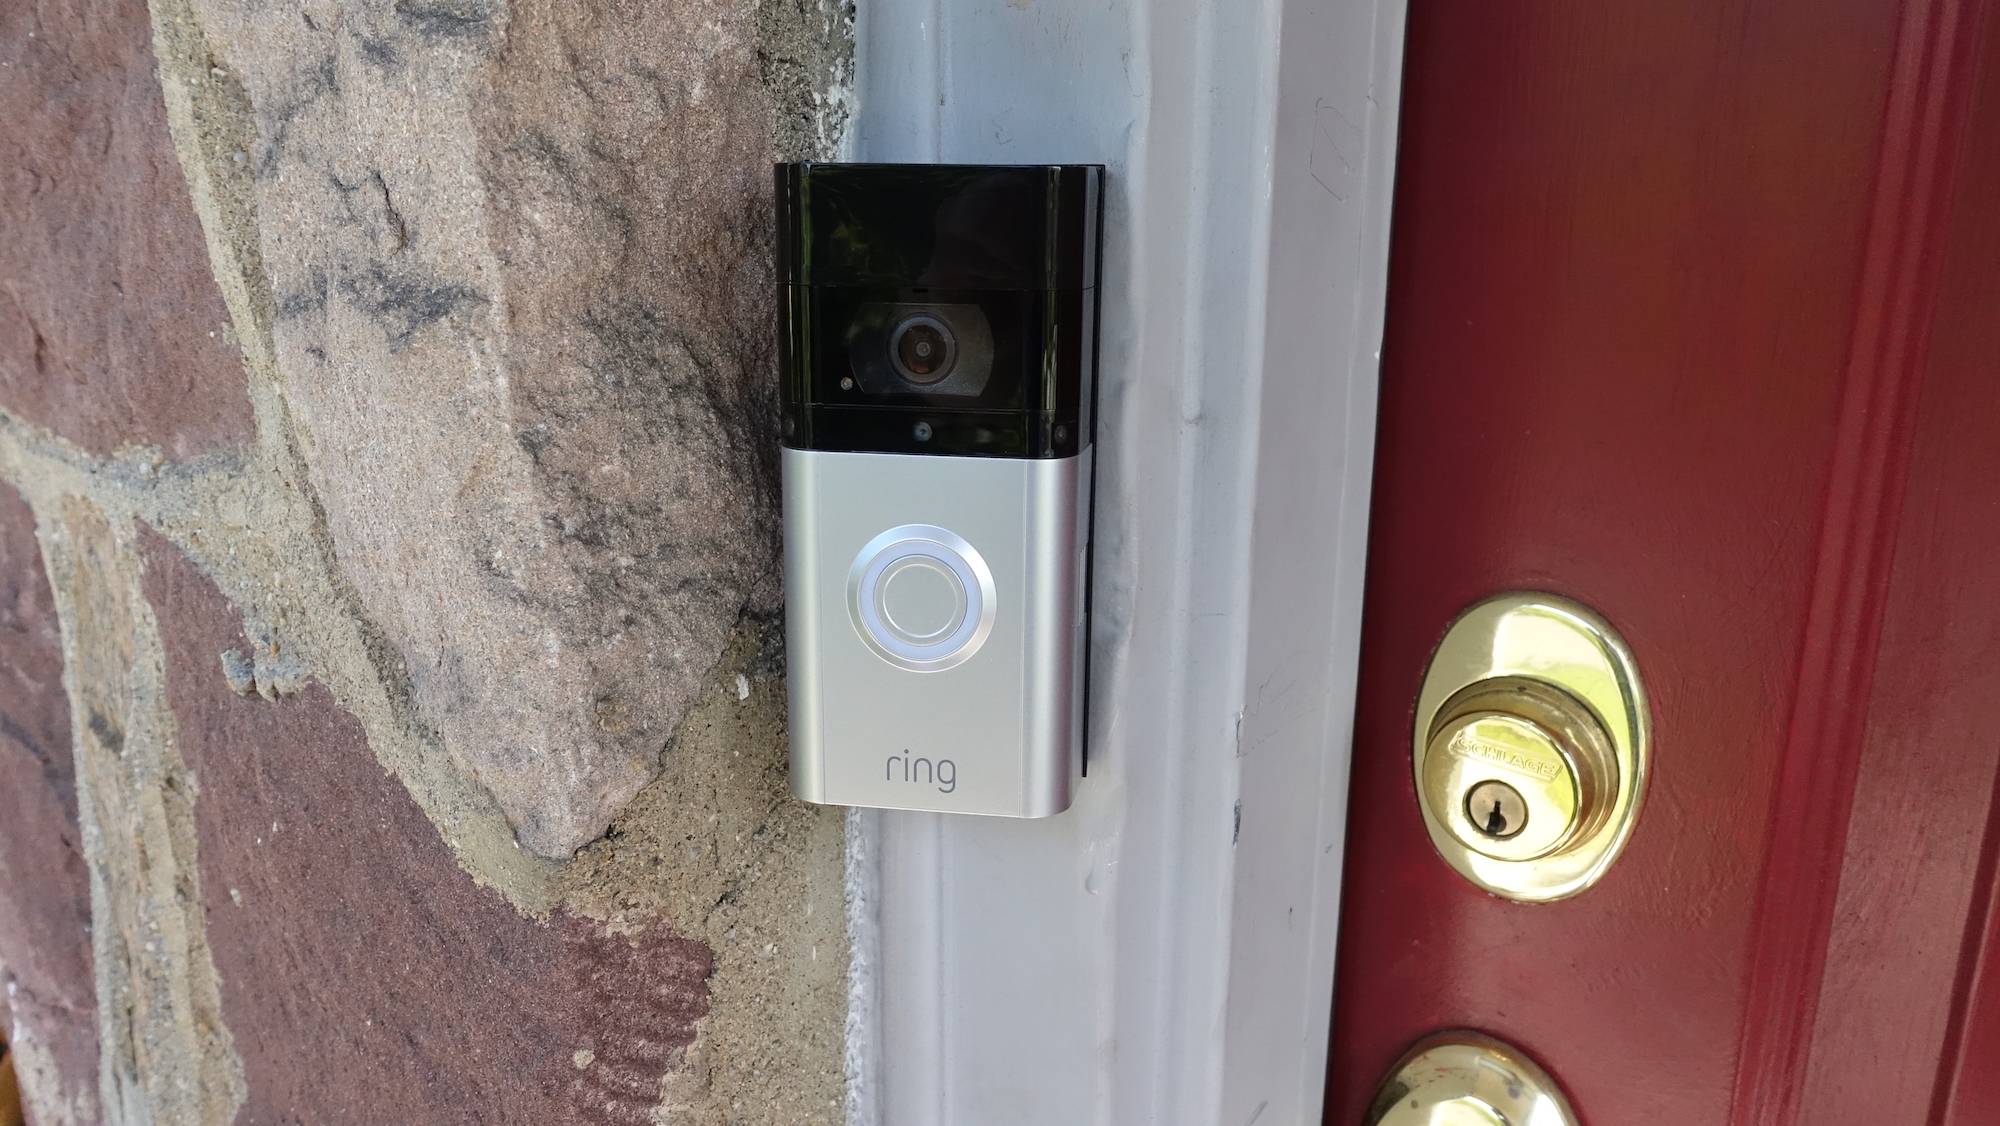 Ring Video Doorbell 3 Information